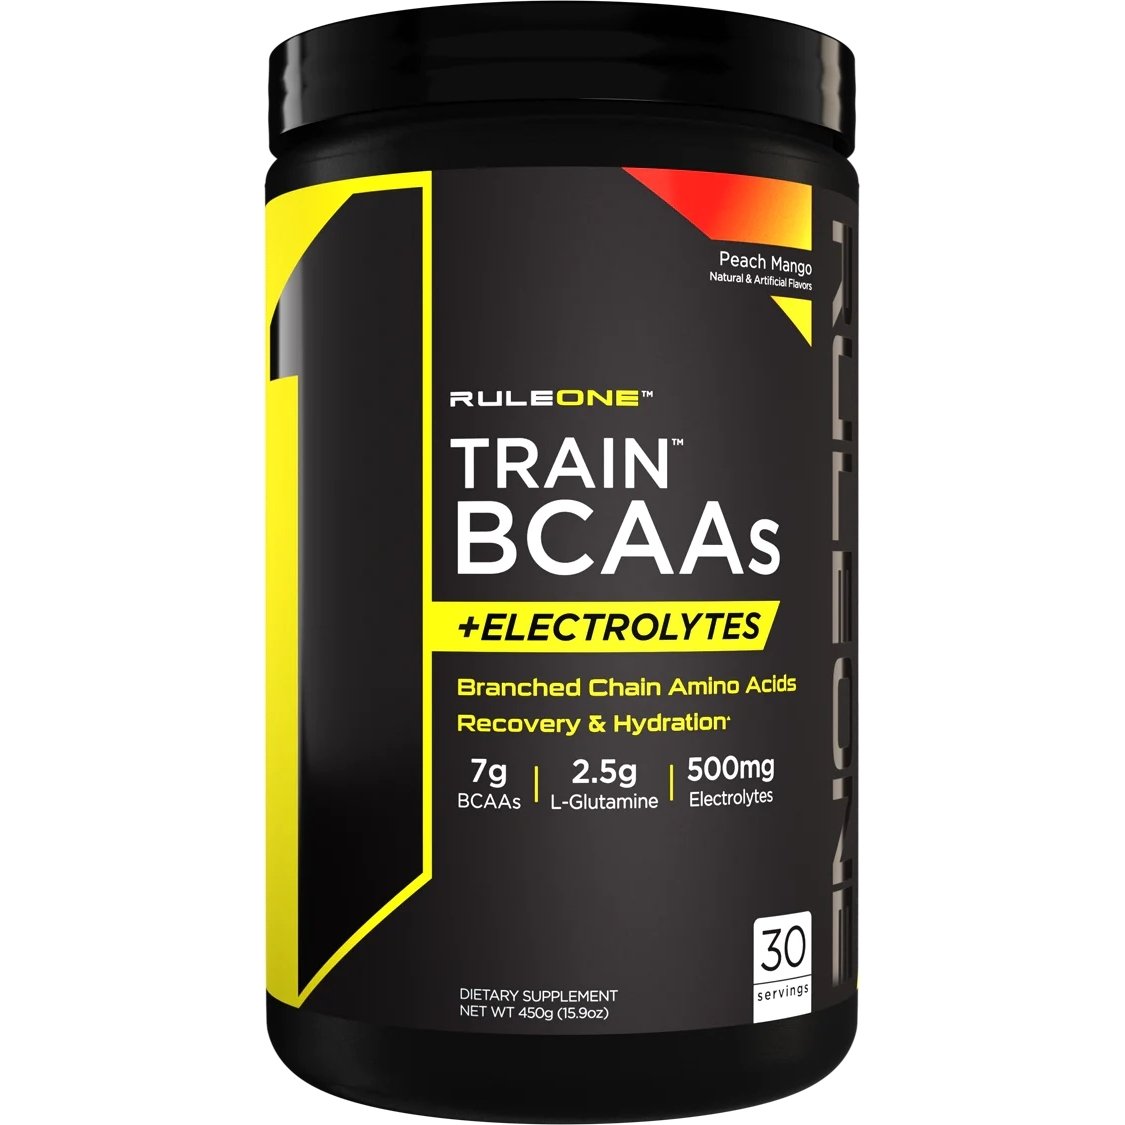 Аминокислота BCAA Rule 1 Train BCAAs + Electrolytes, 450 грамм Персик-манго,  ml, Rule One Proteins. BCAA. Weight Loss स्वास्थ्य लाभ Anti-catabolic properties Lean muscle mass 